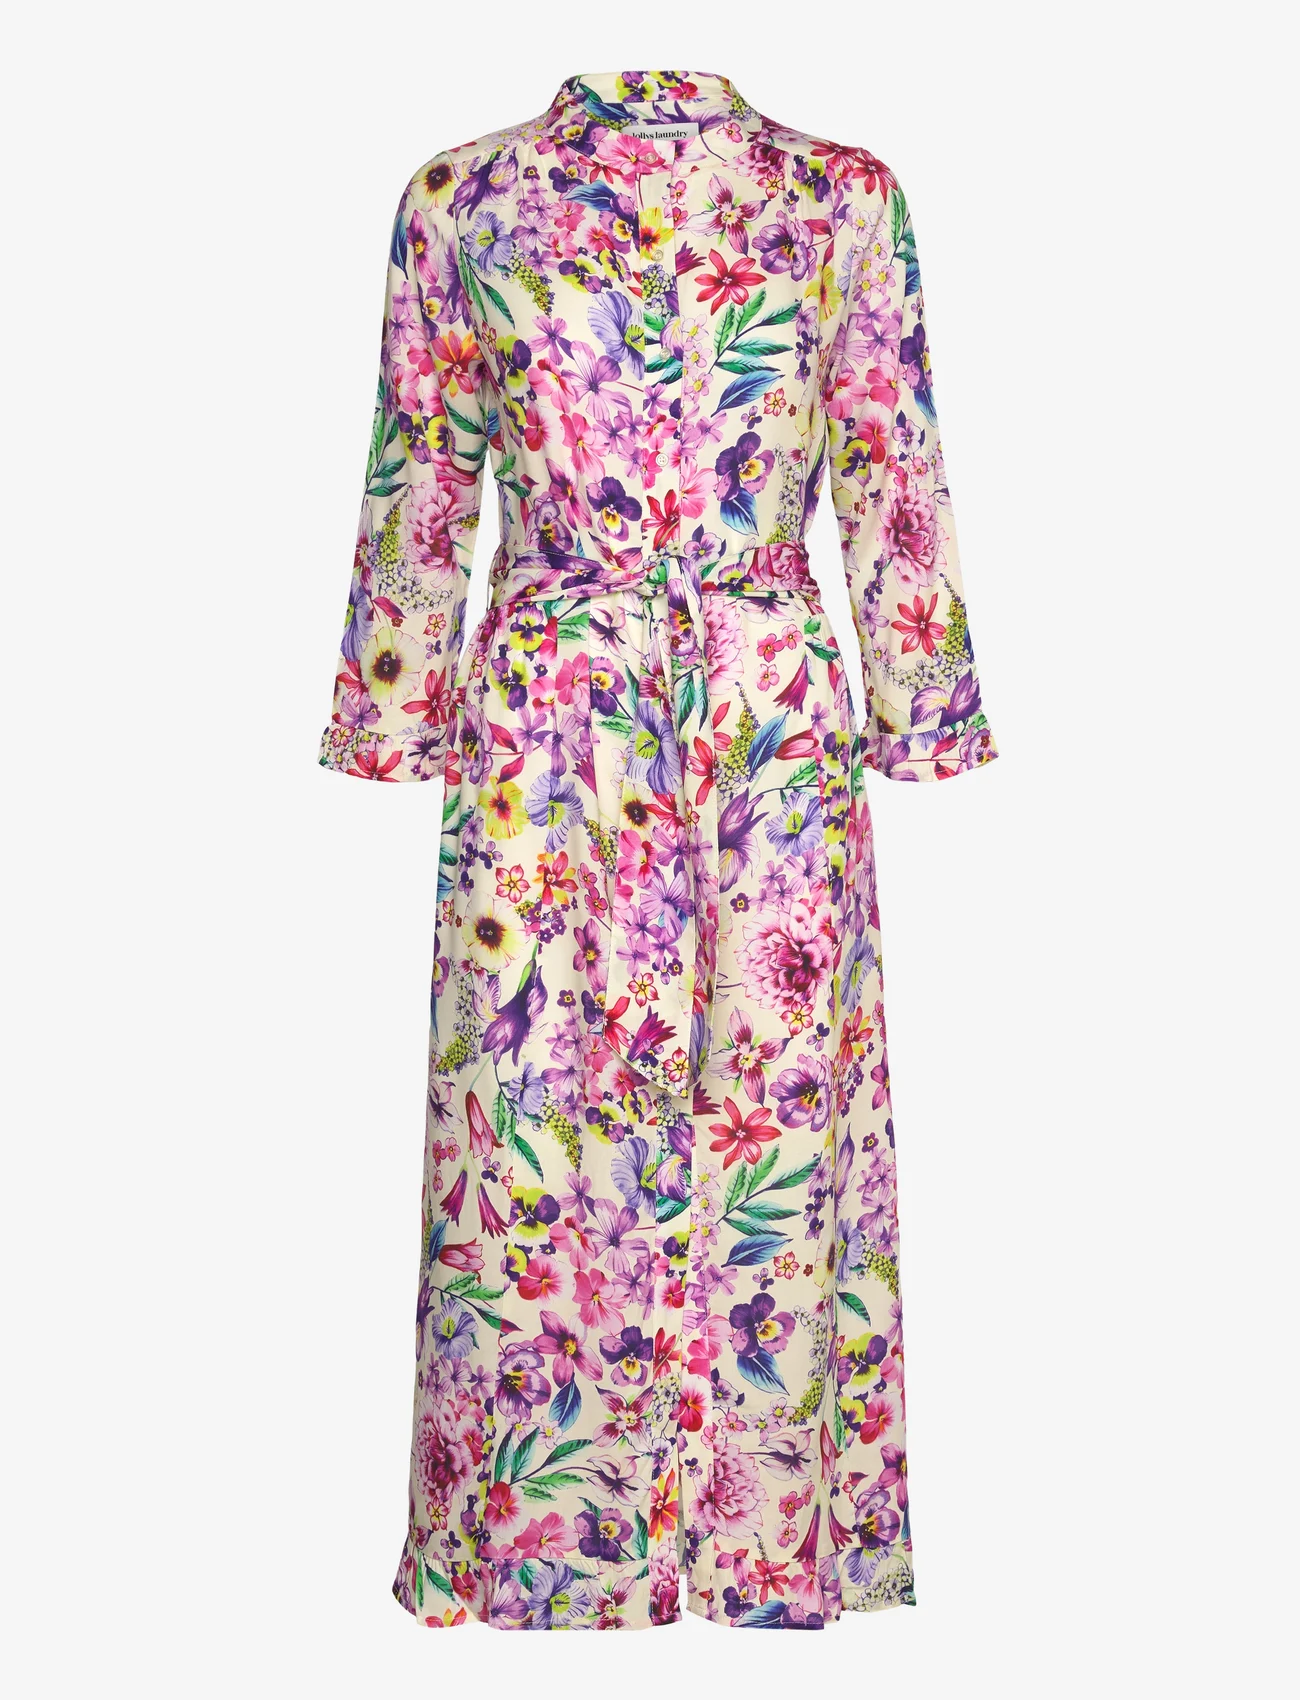 Lollys Laundry - Harper Dress - odzież imprezowa w cenach outletowych - 74 flower print - 0